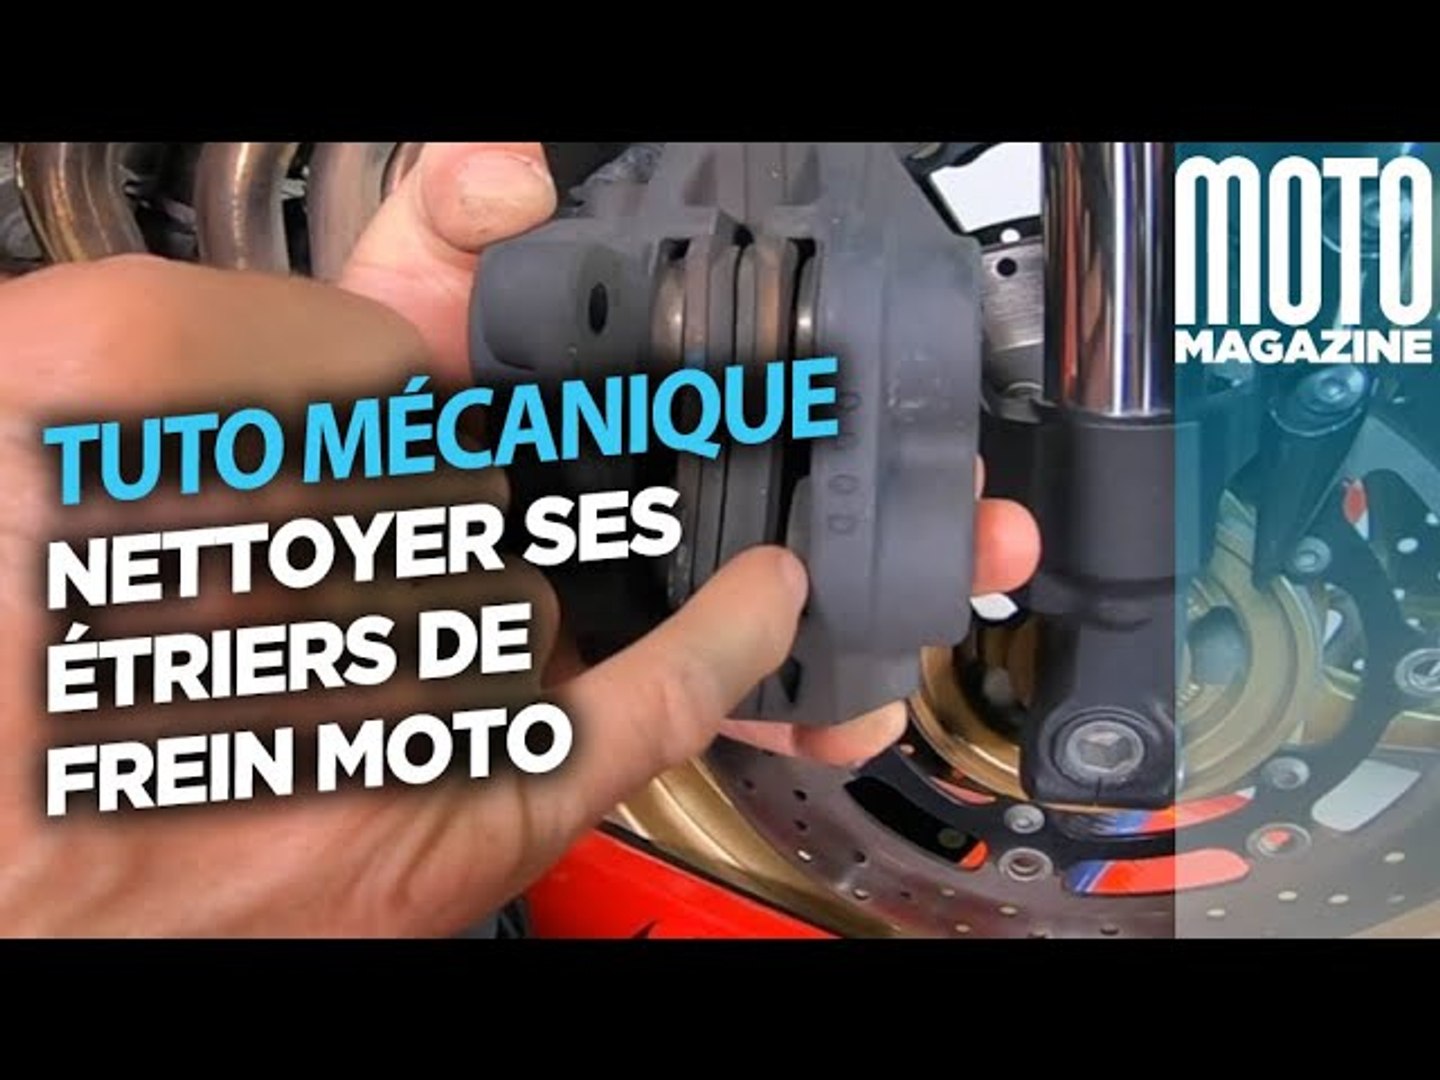 Nettoyer ses étriers de frein moto - tuto Moto Magazine - Vidéo Dailymotion